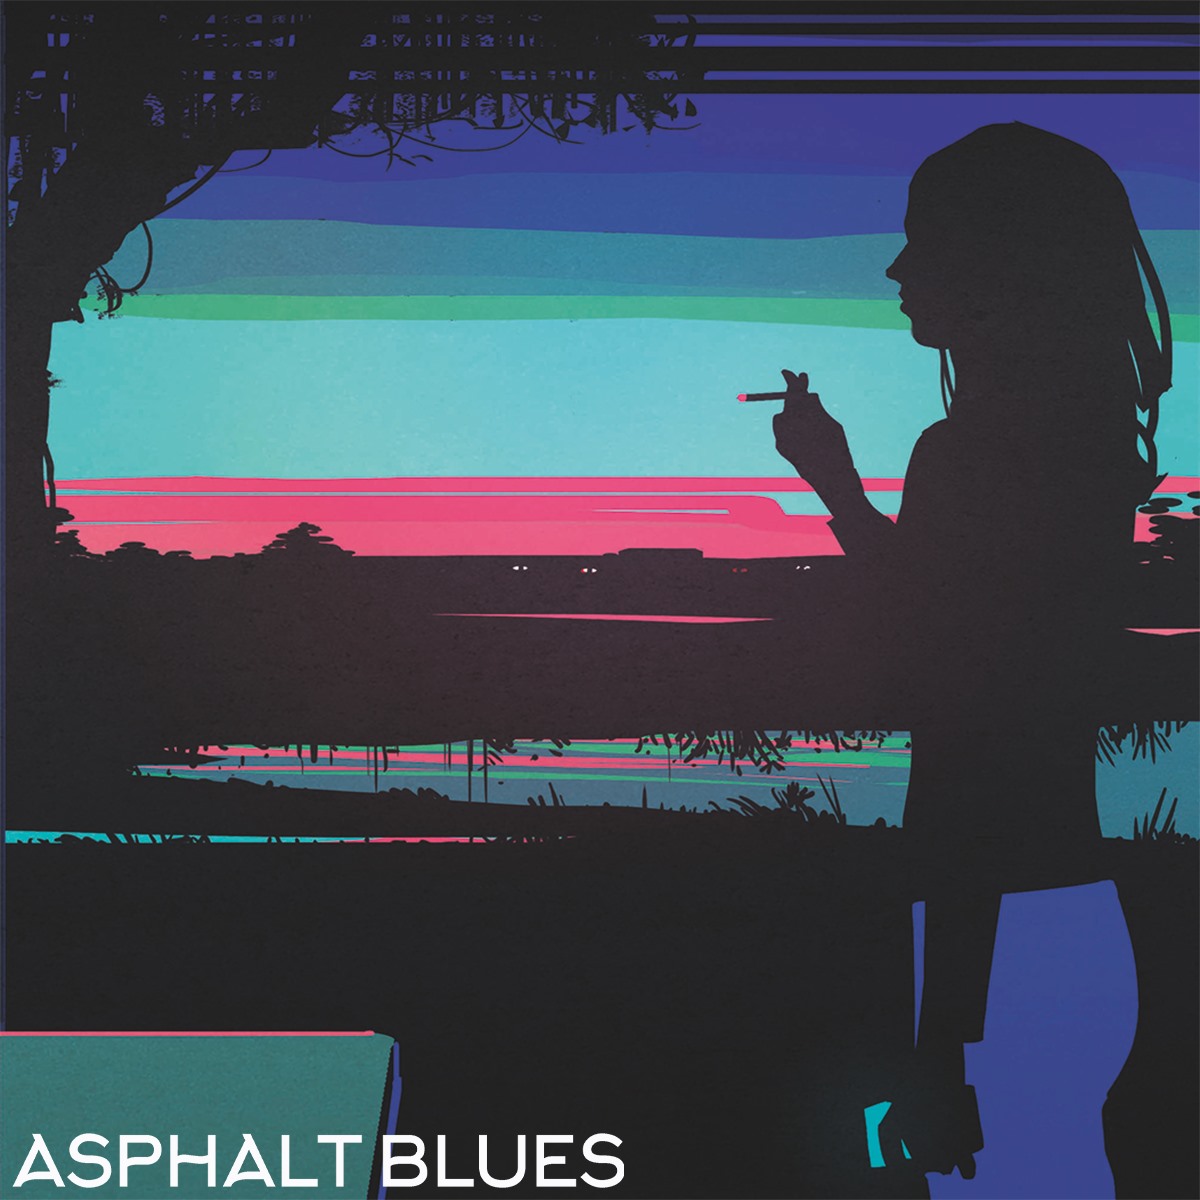 Ashpalt Blues un dessin hypnotique